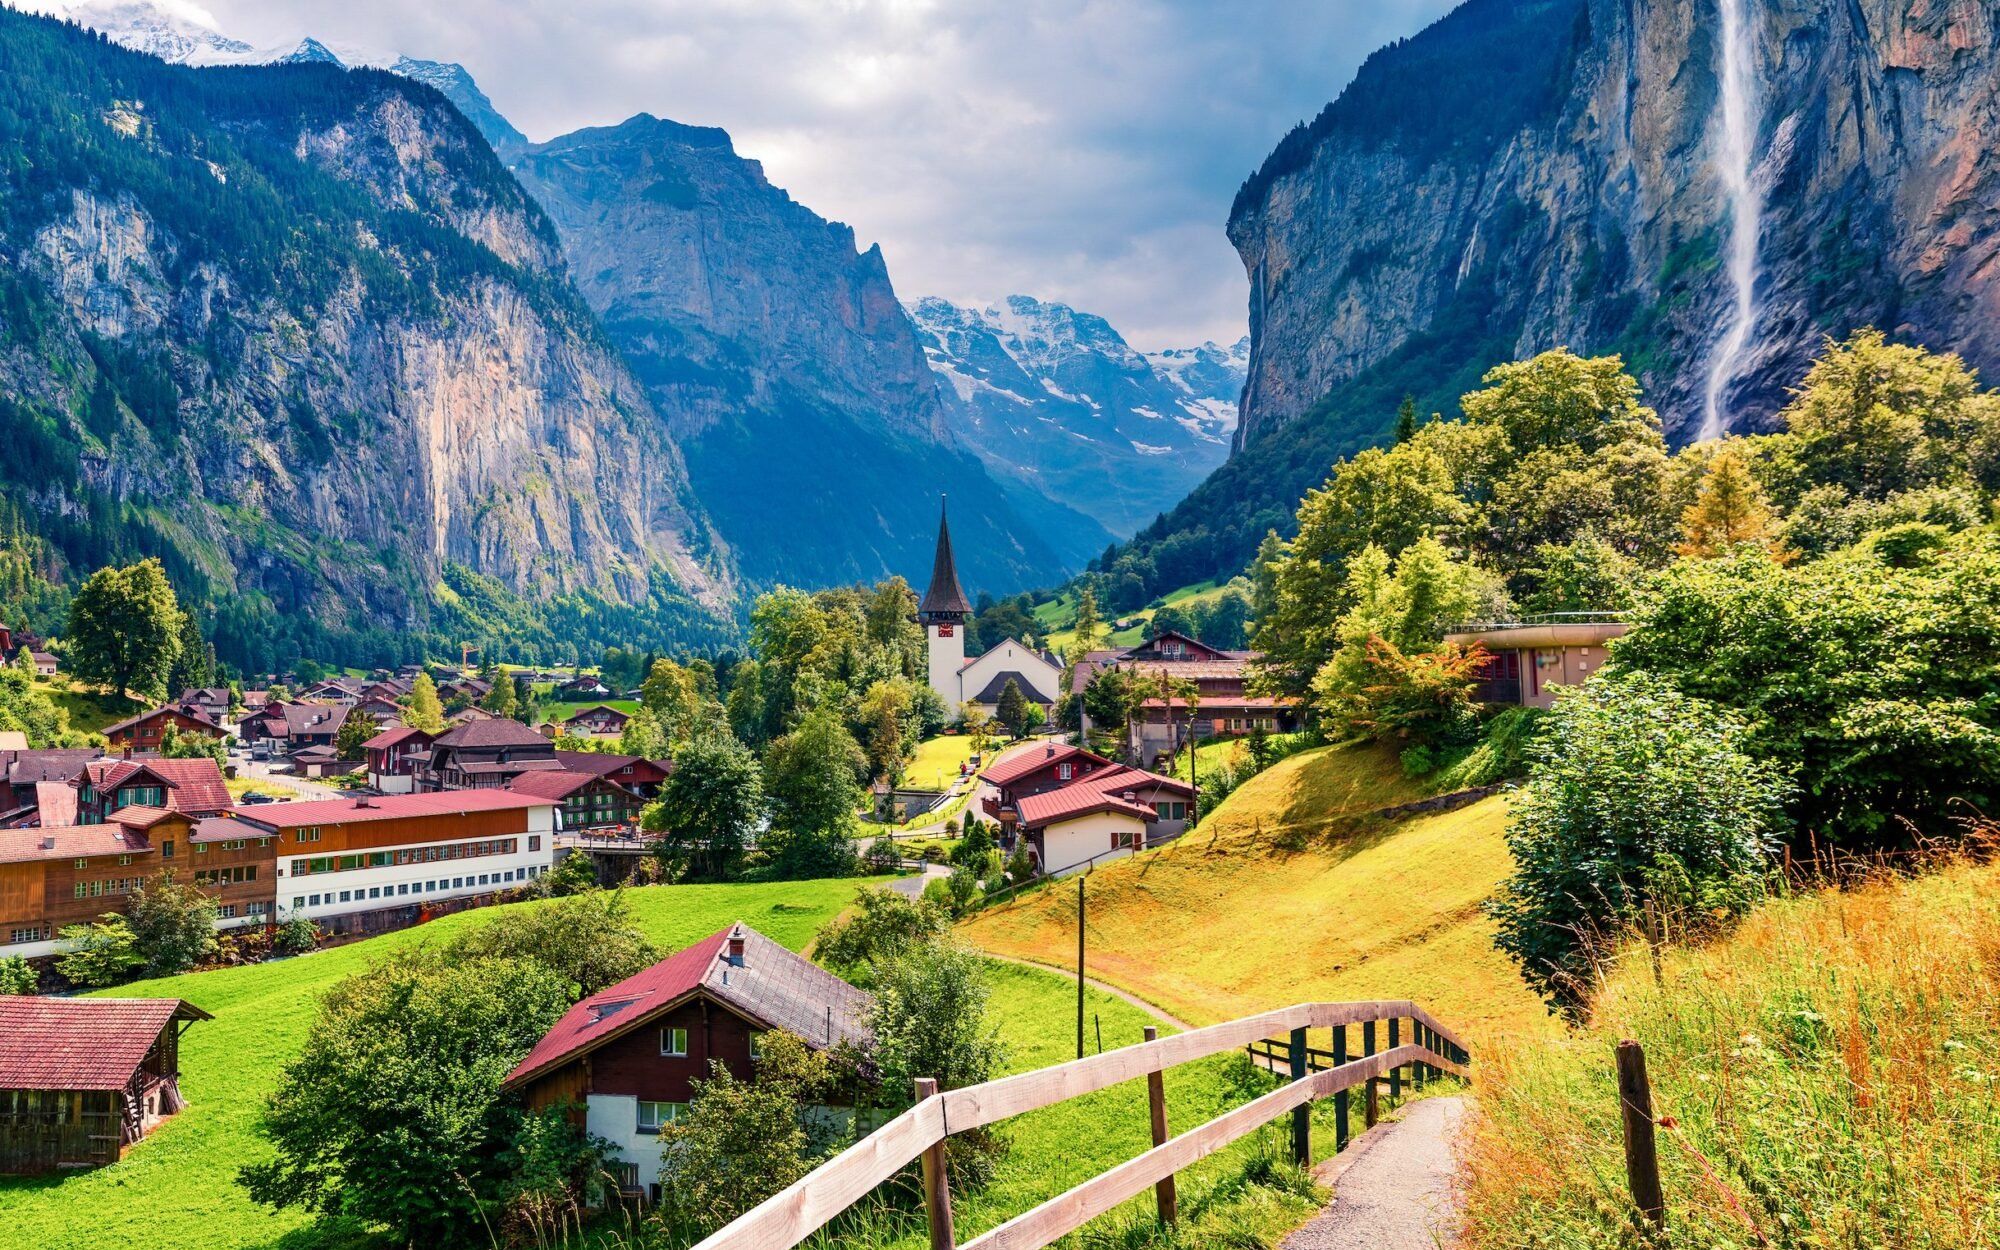 4k】【lauterbrunnen】最美的瑞士乡村之一/ 梦幻般的世界/ 闲适生活